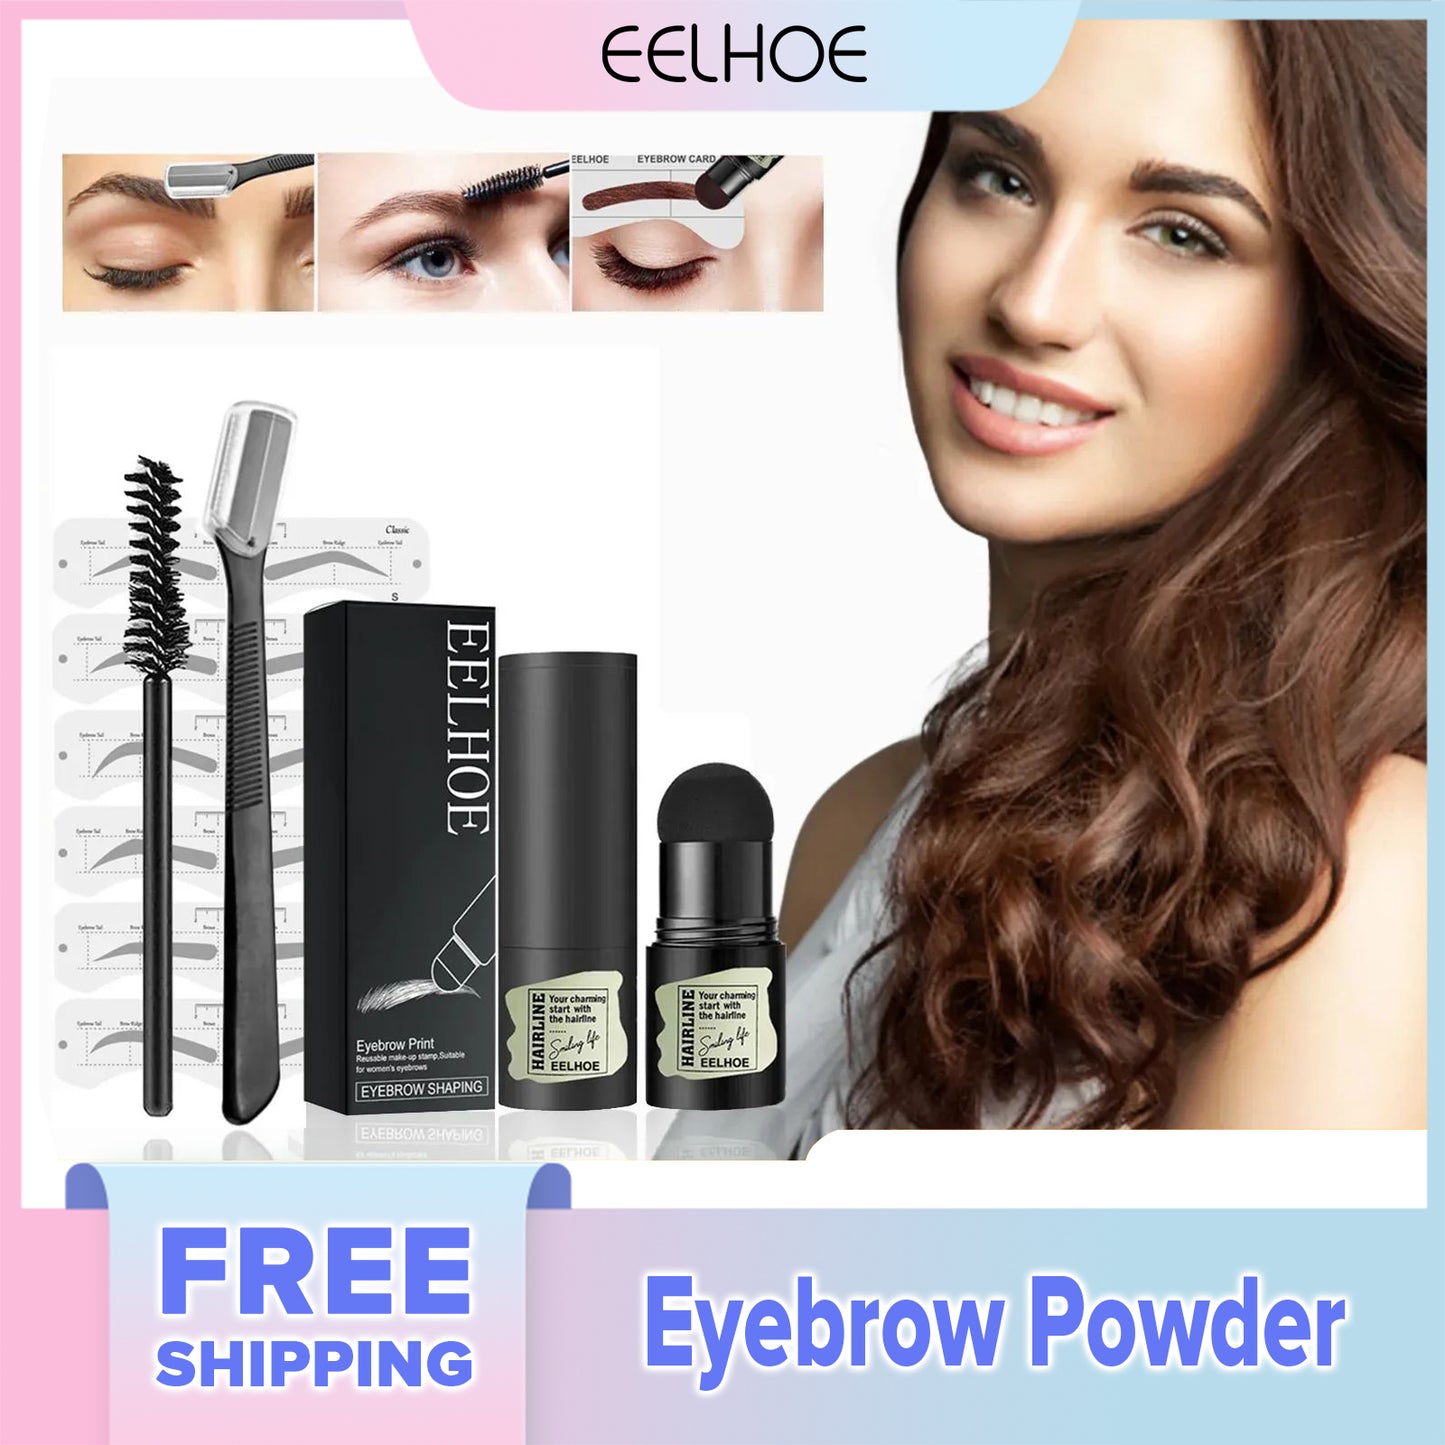 EELHOE Eyebrow Powder Waterproof, Sweatproof, No Makeup